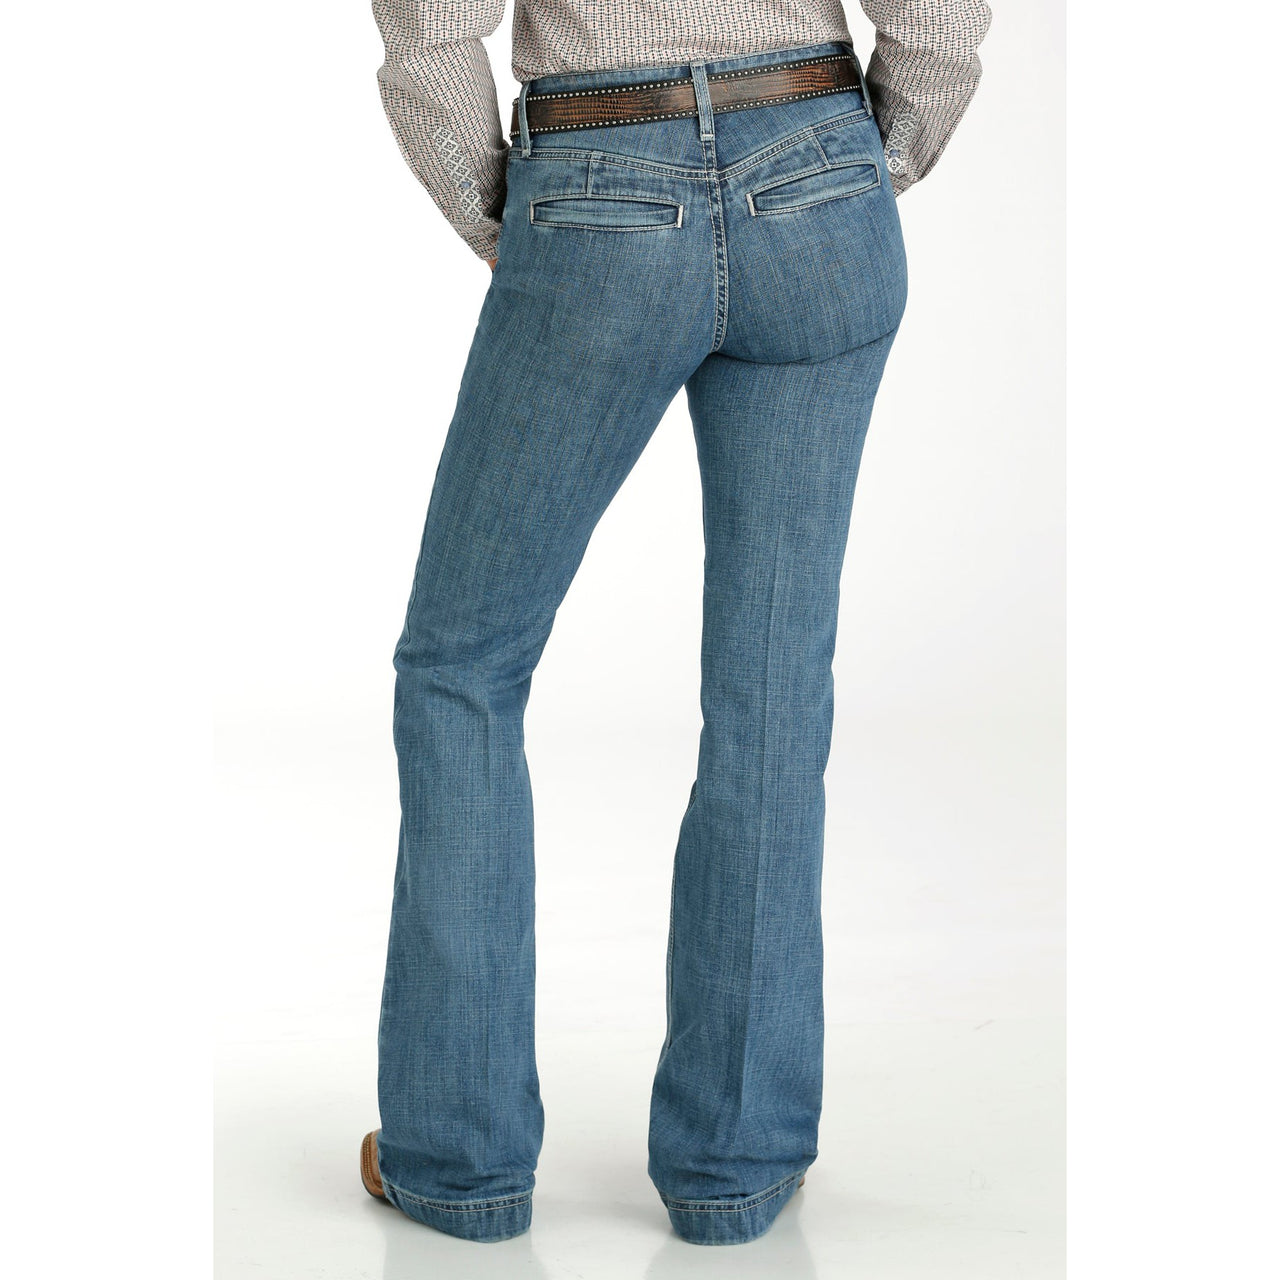 Cinch Women's Lynden Medium Stone Wash Jeans - Indigo